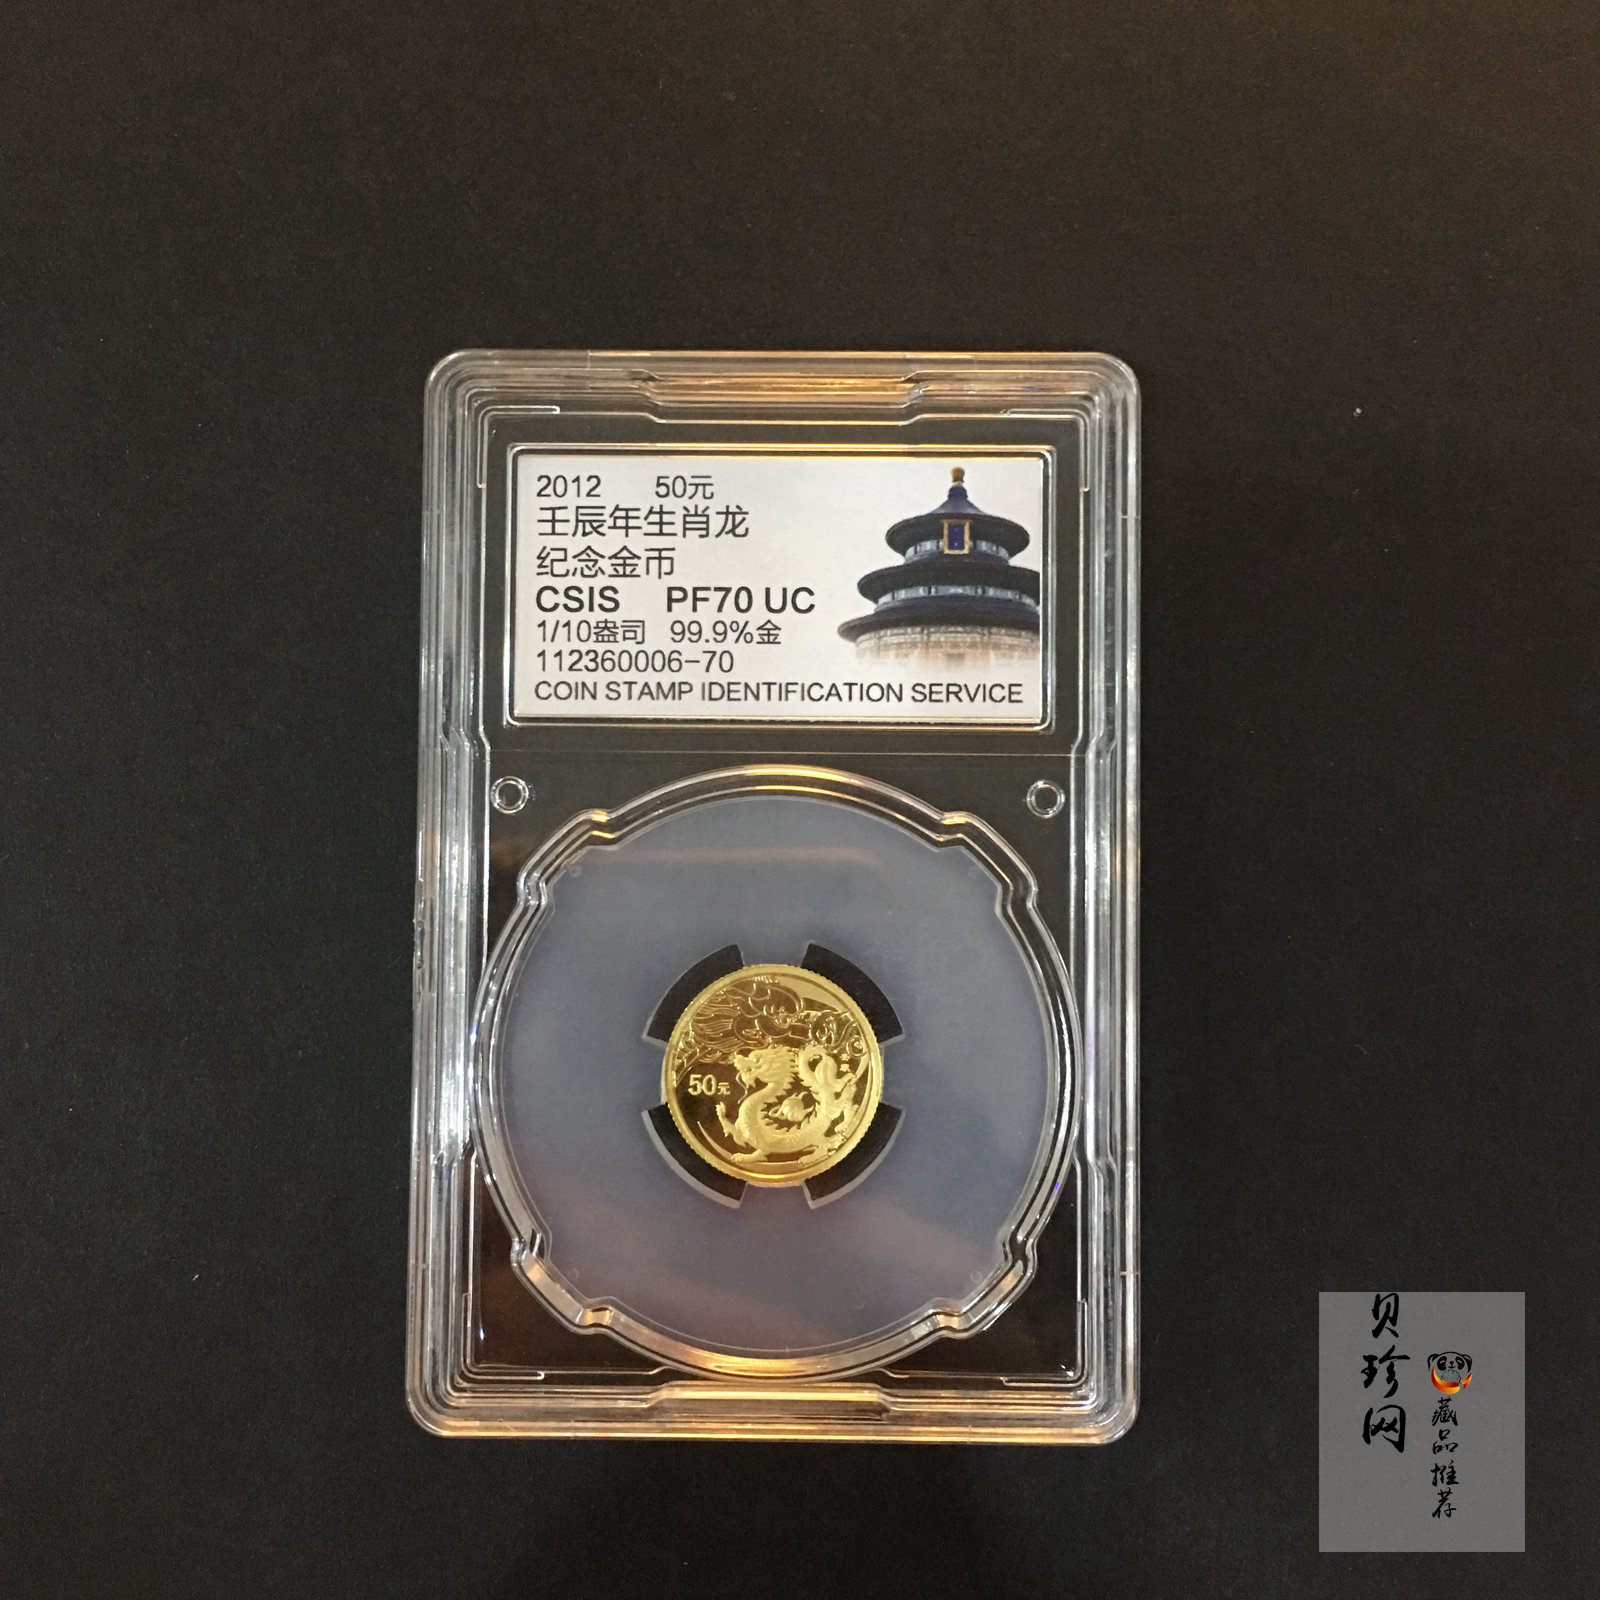 【111501】2012年壬辰龙年生肖1/10盎司精制金币